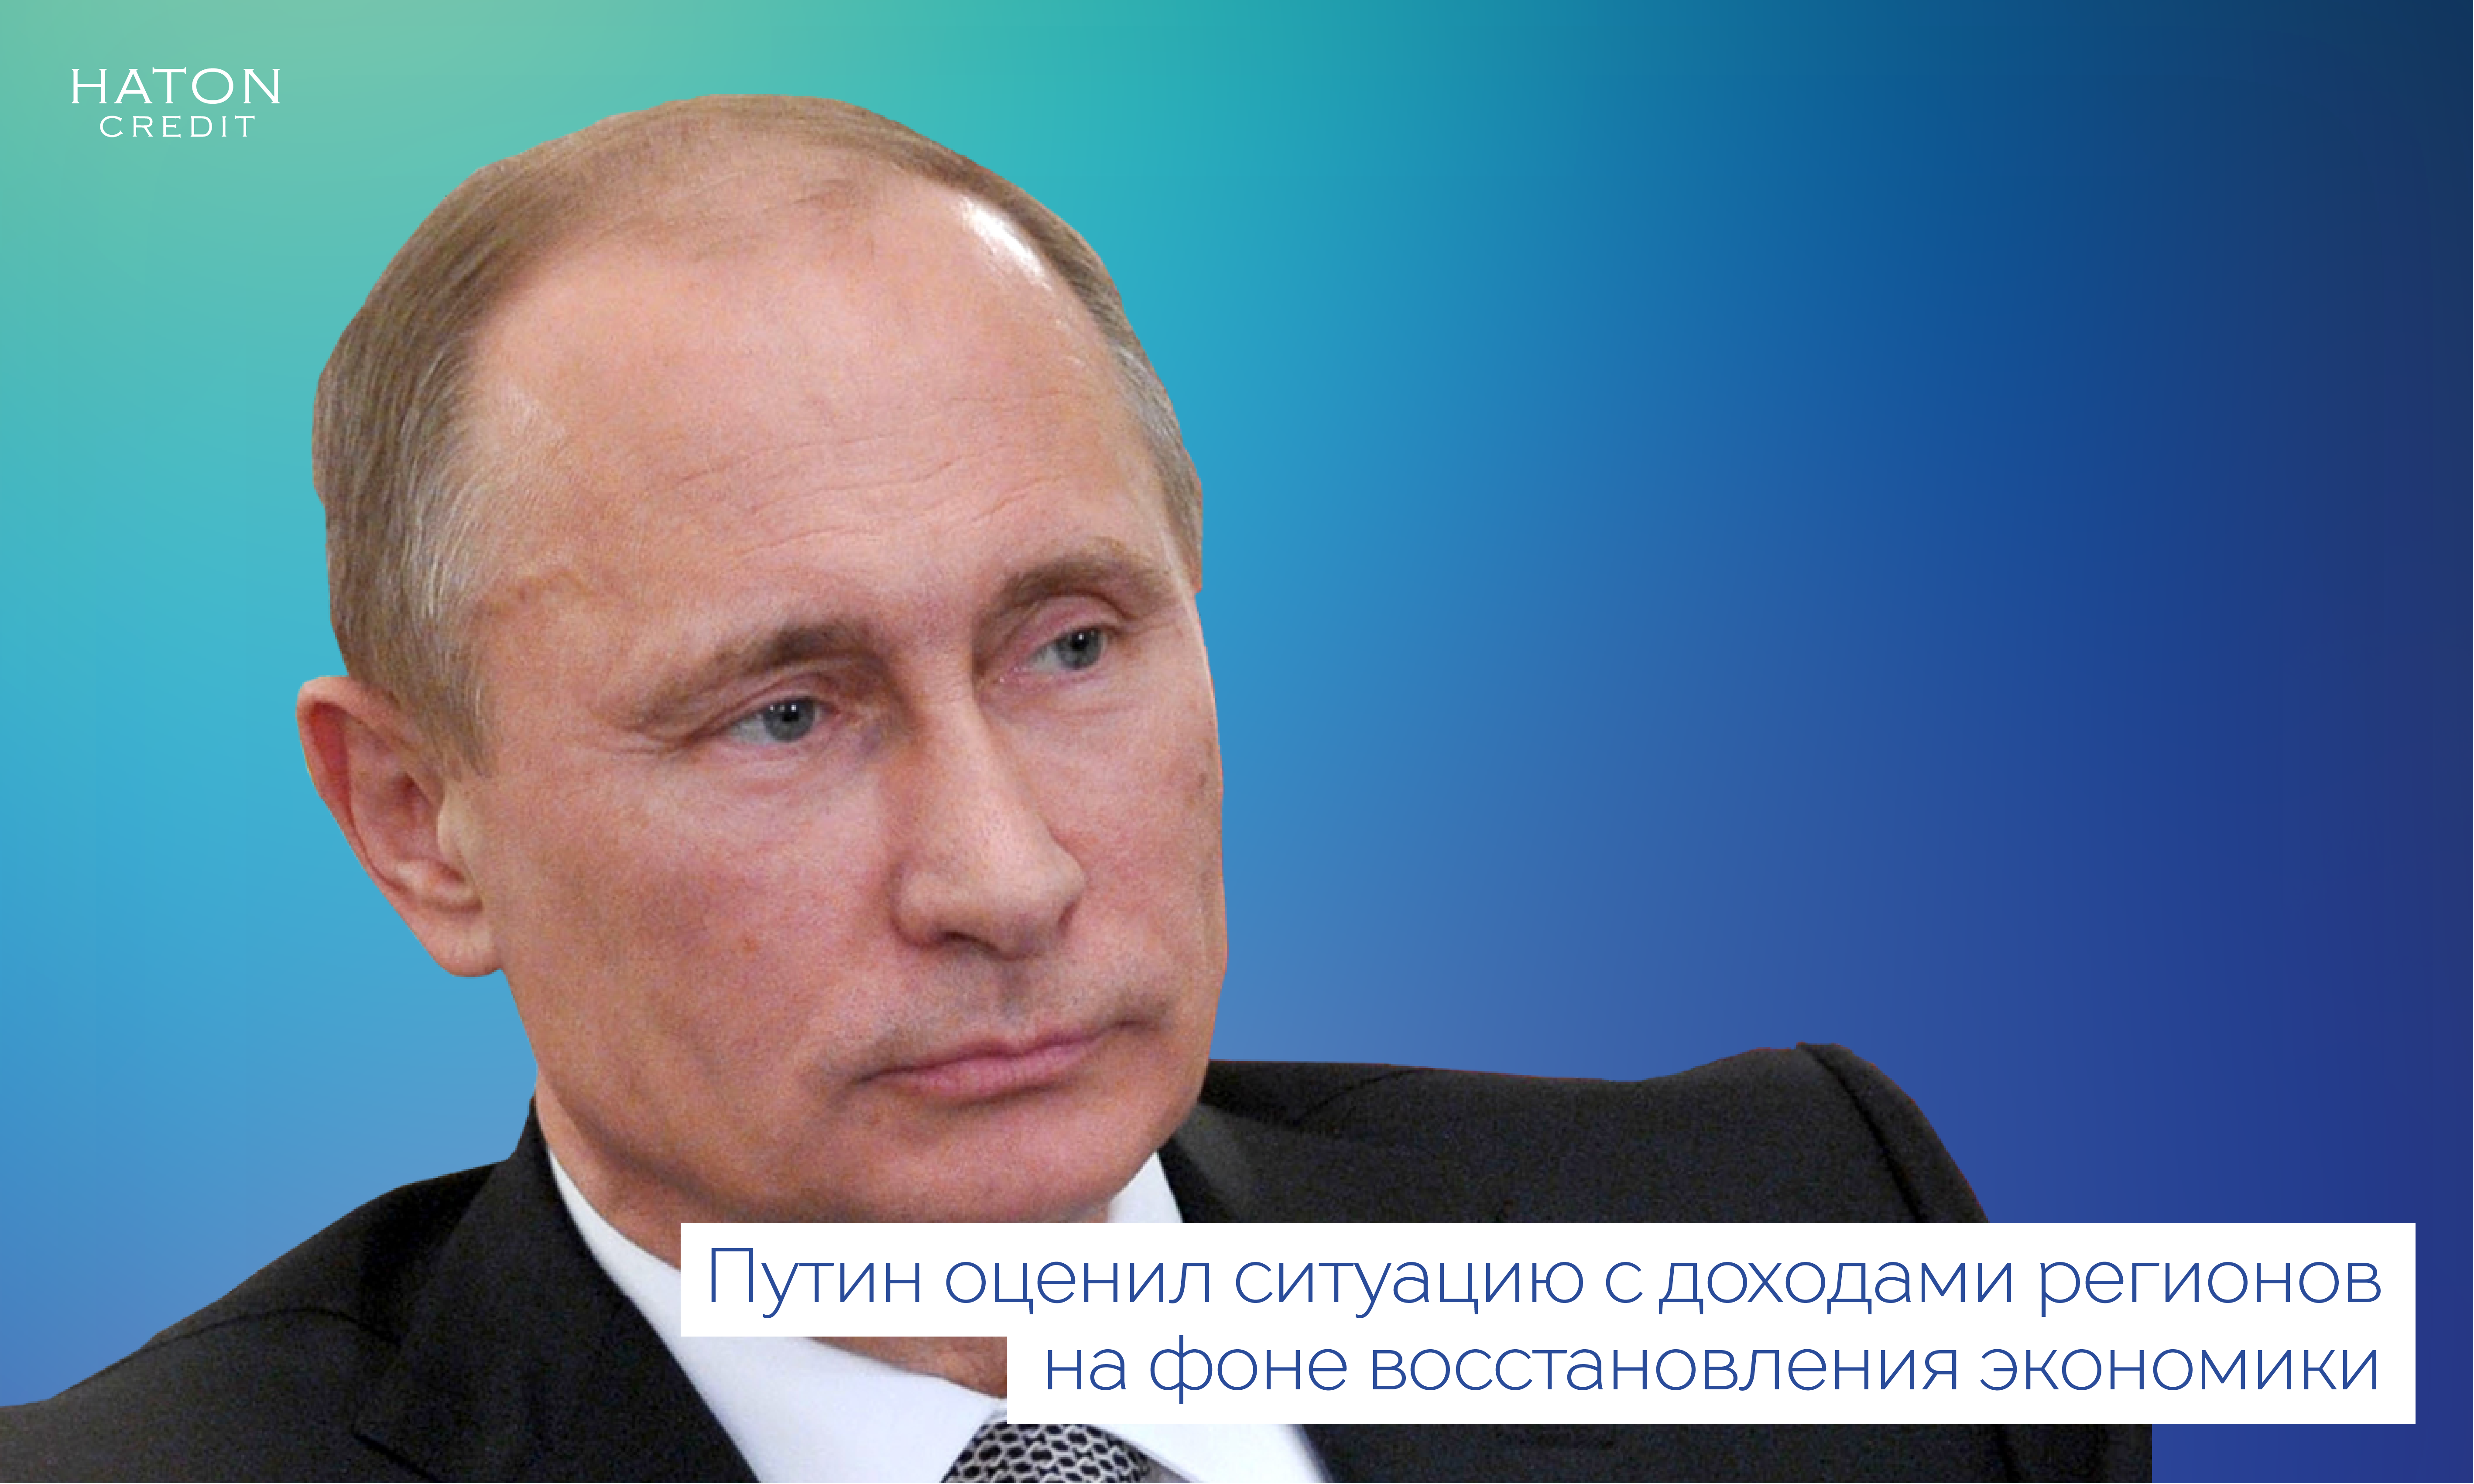 Путин оценил ситуацию с доходами регионов на фоне восстановления экономики